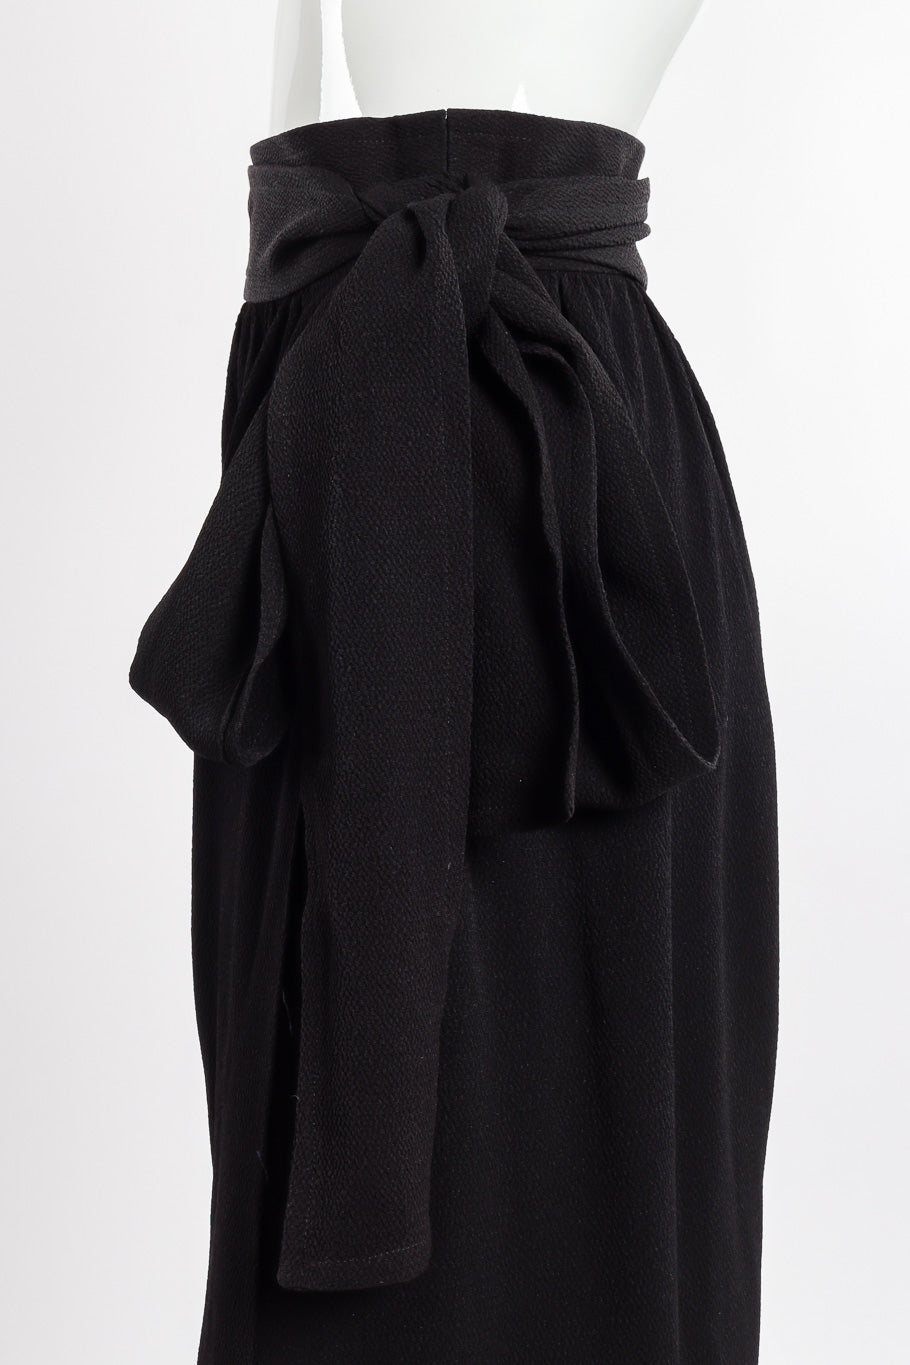 Wrap trouser by Yves Saint Laurent on mannequin tie close @recessla